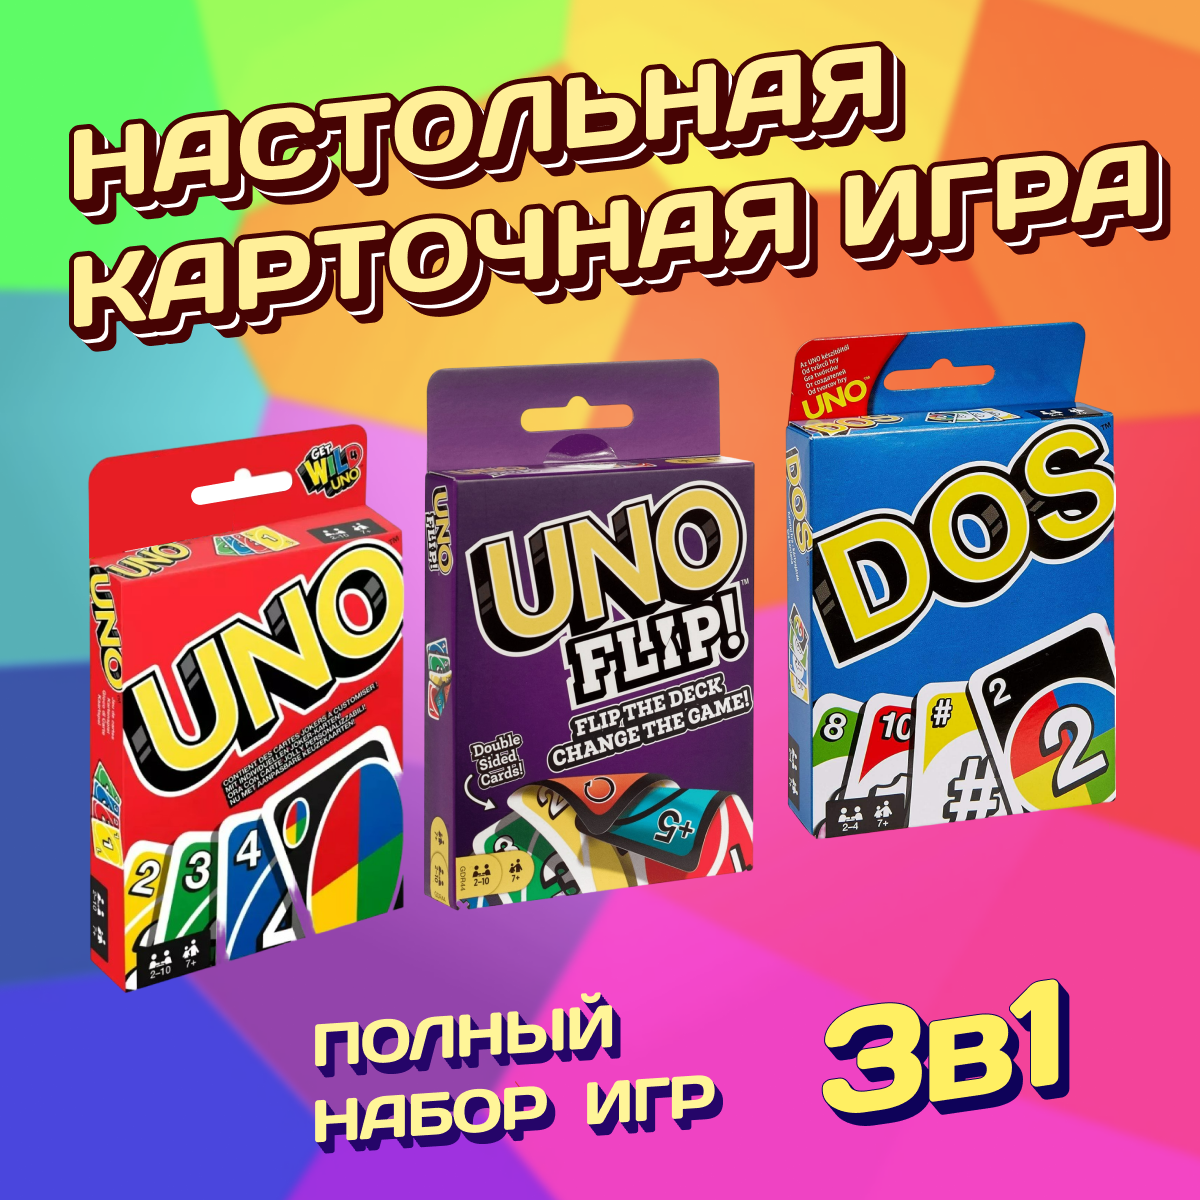 Настольная карточная игра для всей семьи UNO, DOS, FLIP, набор 3 шт./ Развлекательные игры для детей и взрослых